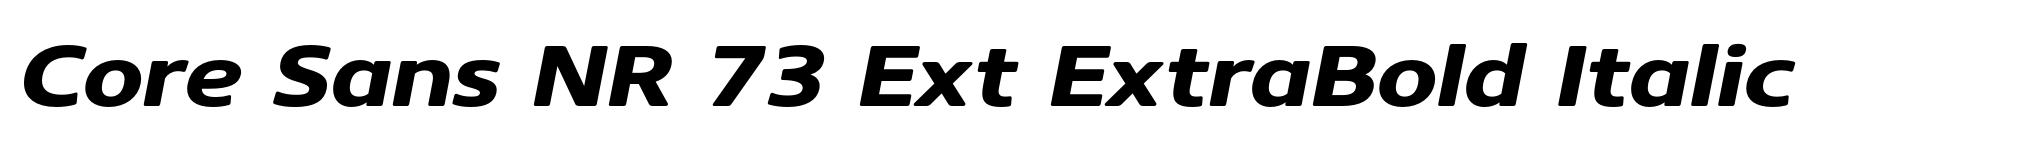 Core Sans NR 73 Ext ExtraBold Italic image